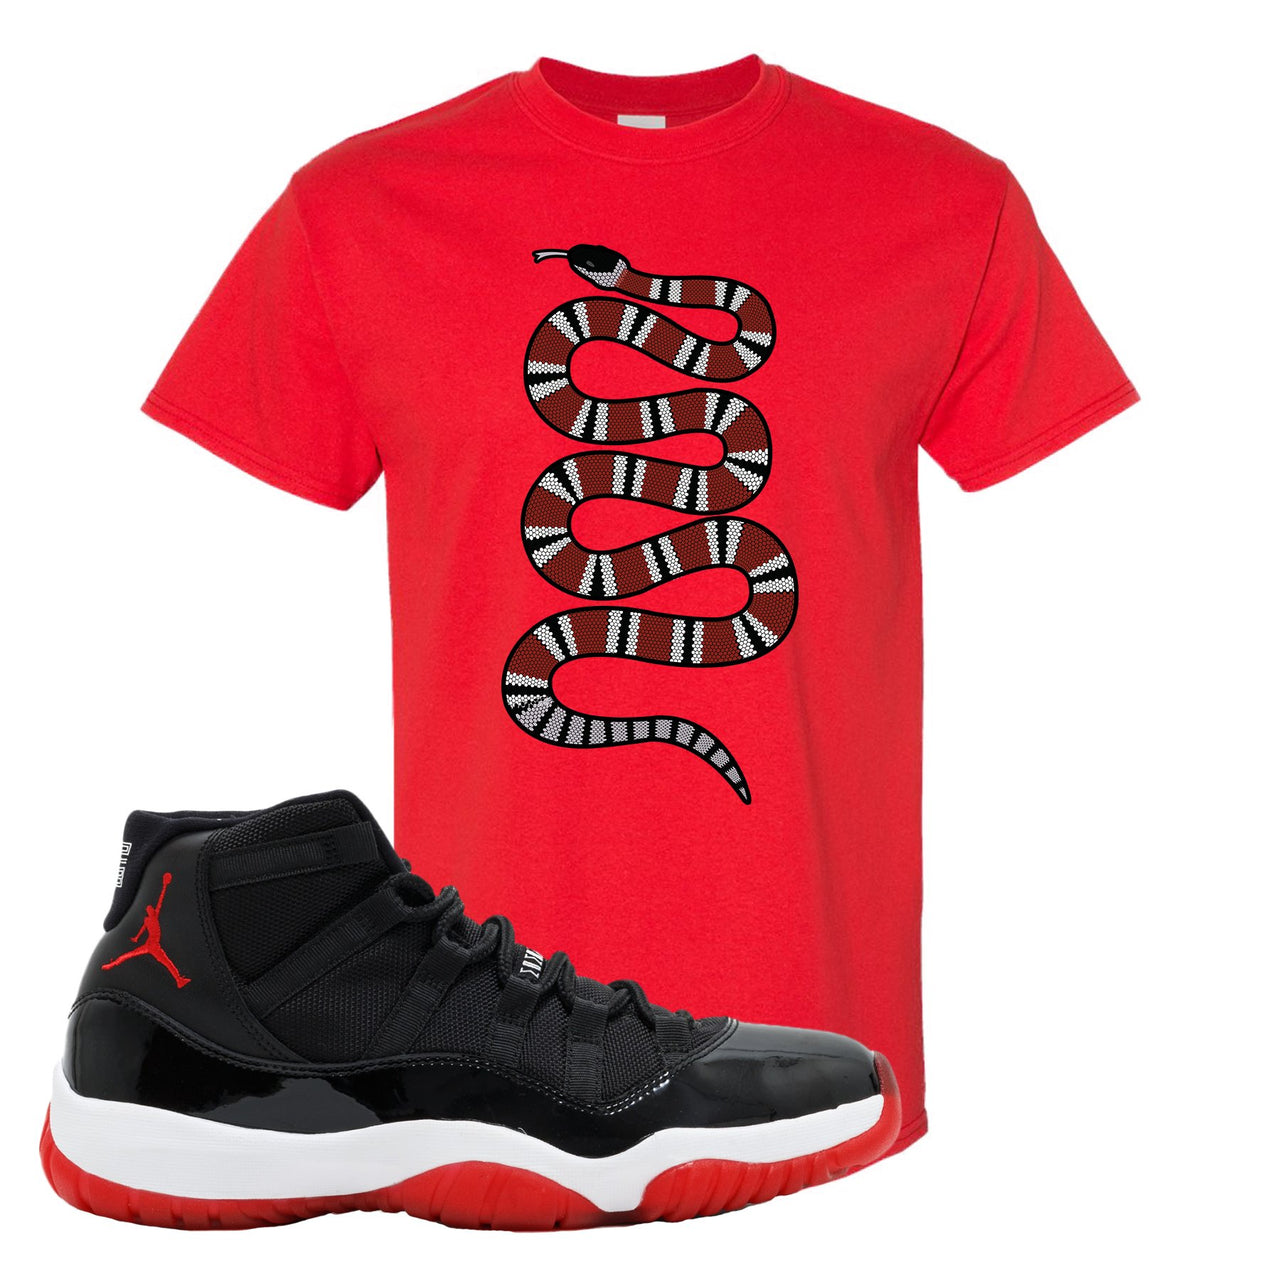 Jordan 11 Bred Coiled Snake Red Sneaker Hook Up T-Shirt